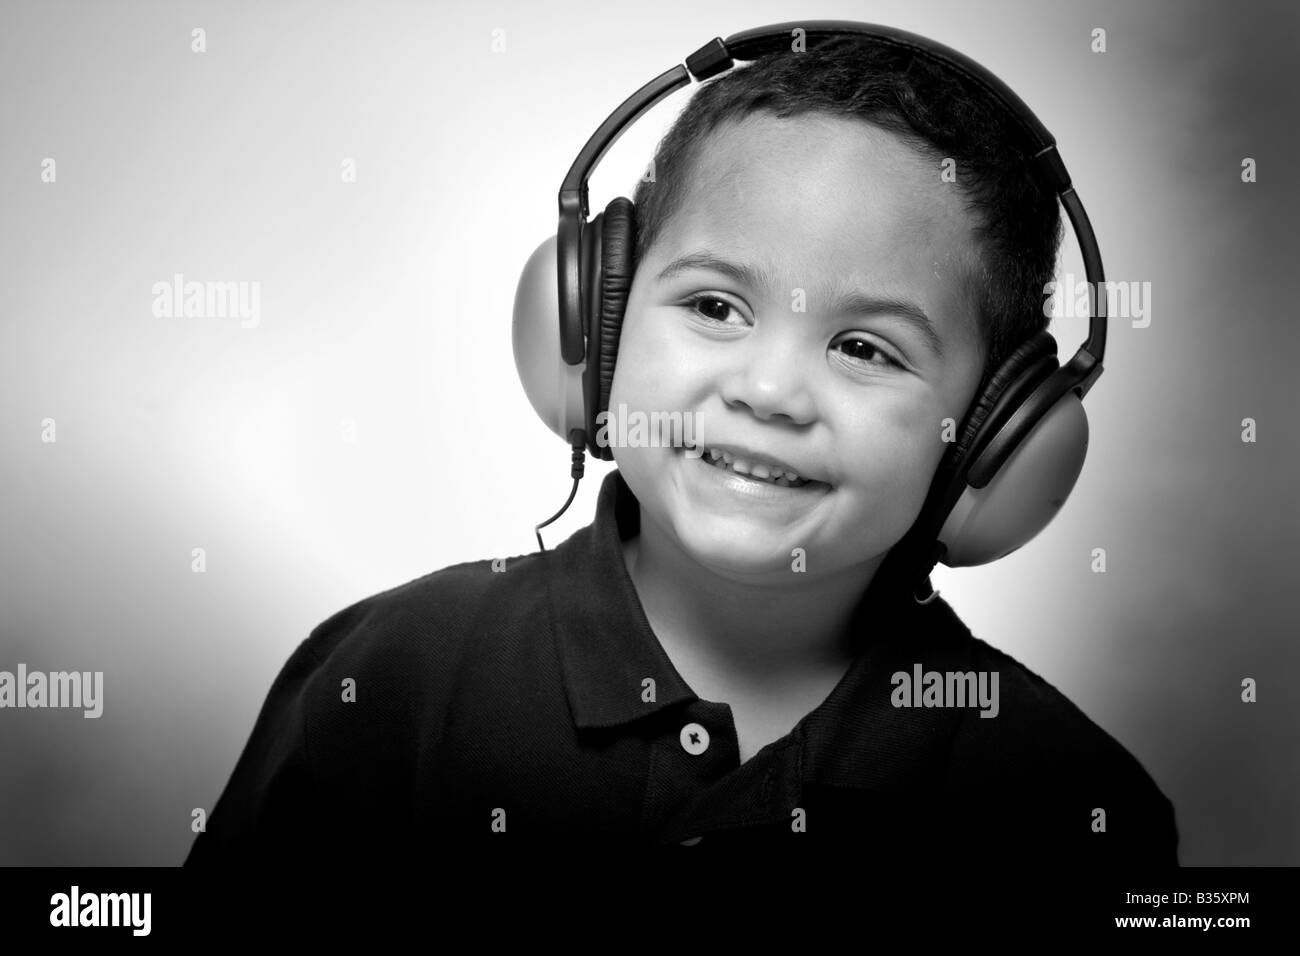 Cantando Niño En Los Auriculares Aislados En Blanco Fotos, retratos,  imágenes y fotografía de archivo libres de derecho. Image 12157712